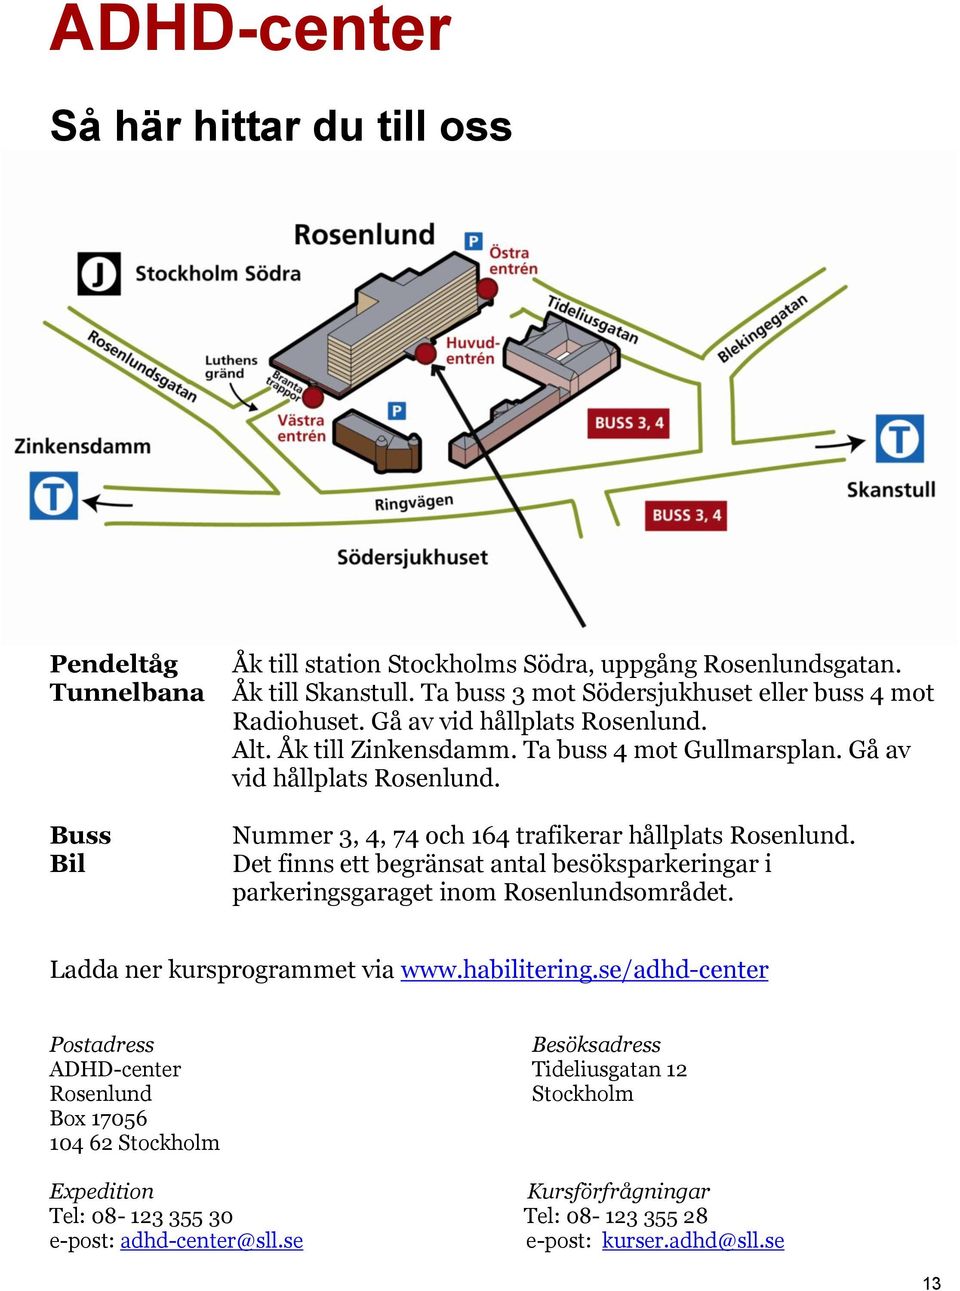 Det finns ett begränsat antal besöksparkeringar i parkeringsgaraget inom Rosenlundsområdet. Ladda ner kursprogrammet via www.habilitering.